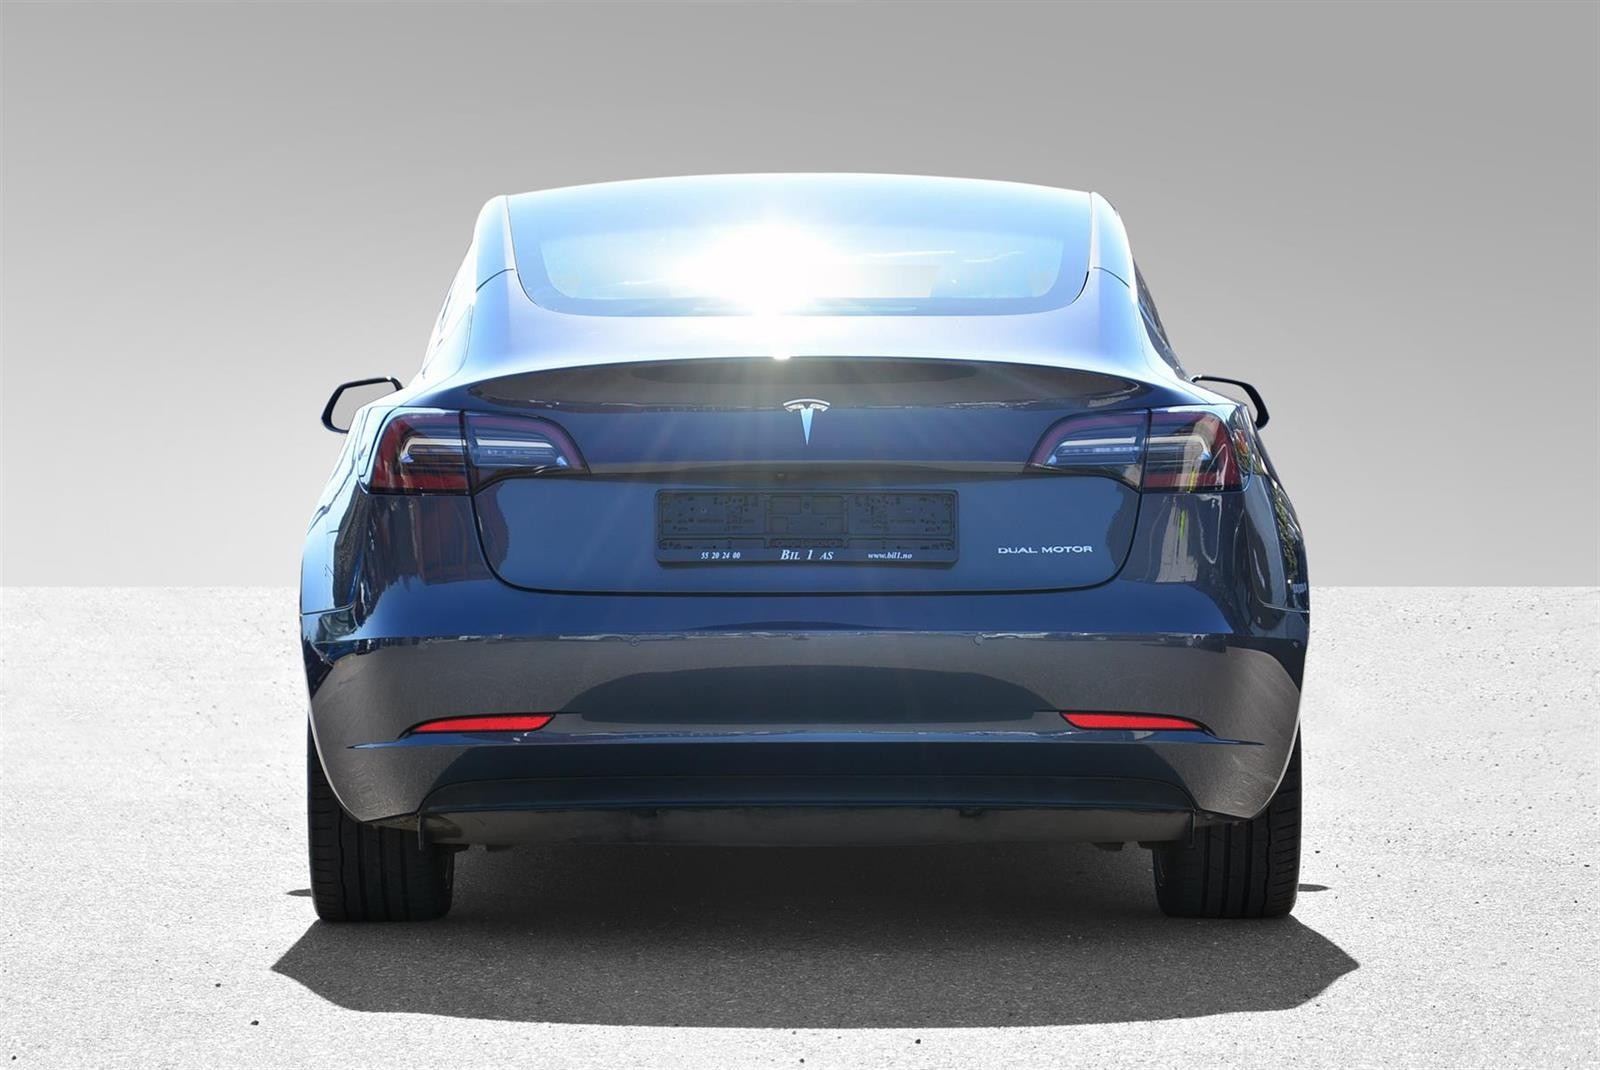 Bilde 5 av Tesla Model 3